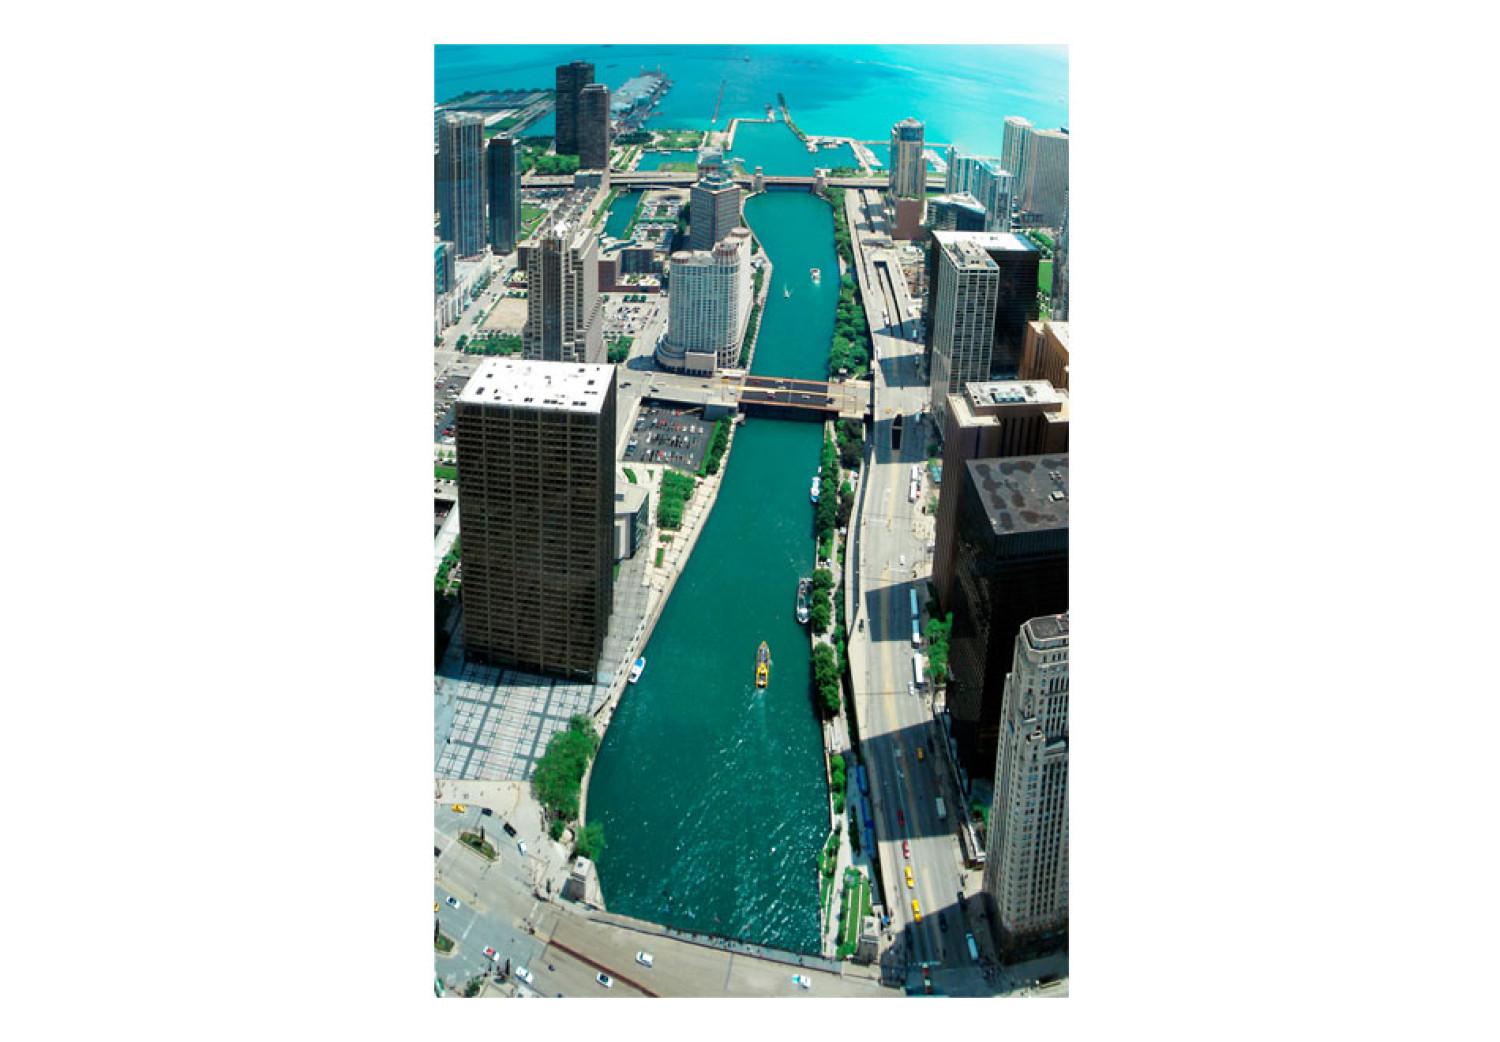 Fotomural a medida Arquitectura Urbana de Chicago - vista aérea con bahía turquesa